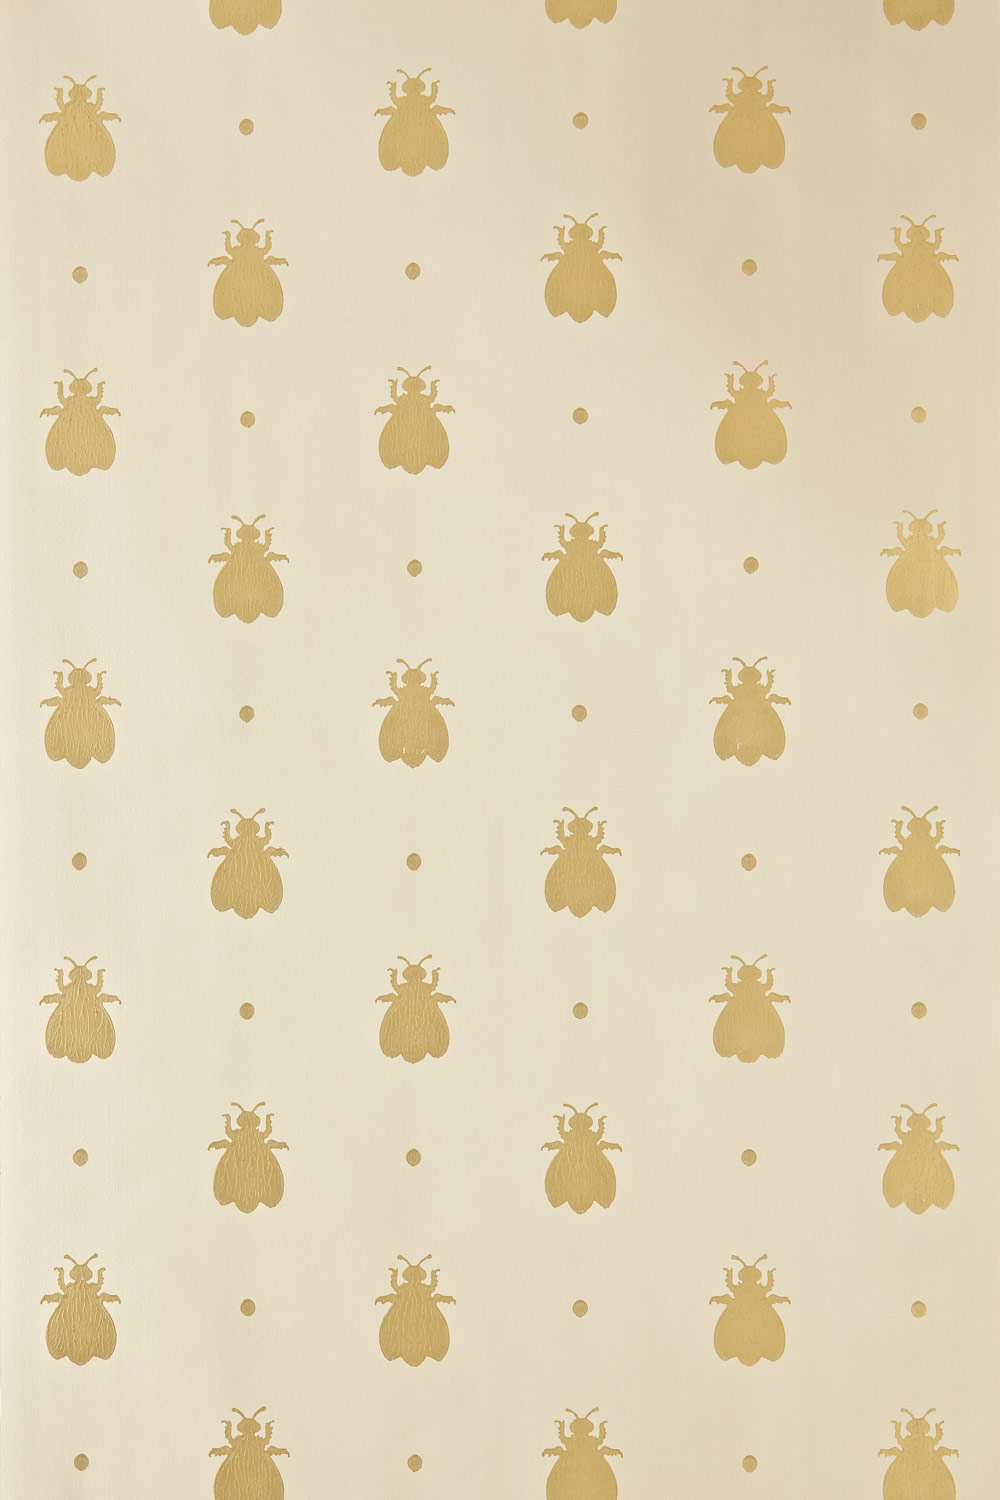 Bumble Bee Bp Wallpaper Patterns Farrow Ball